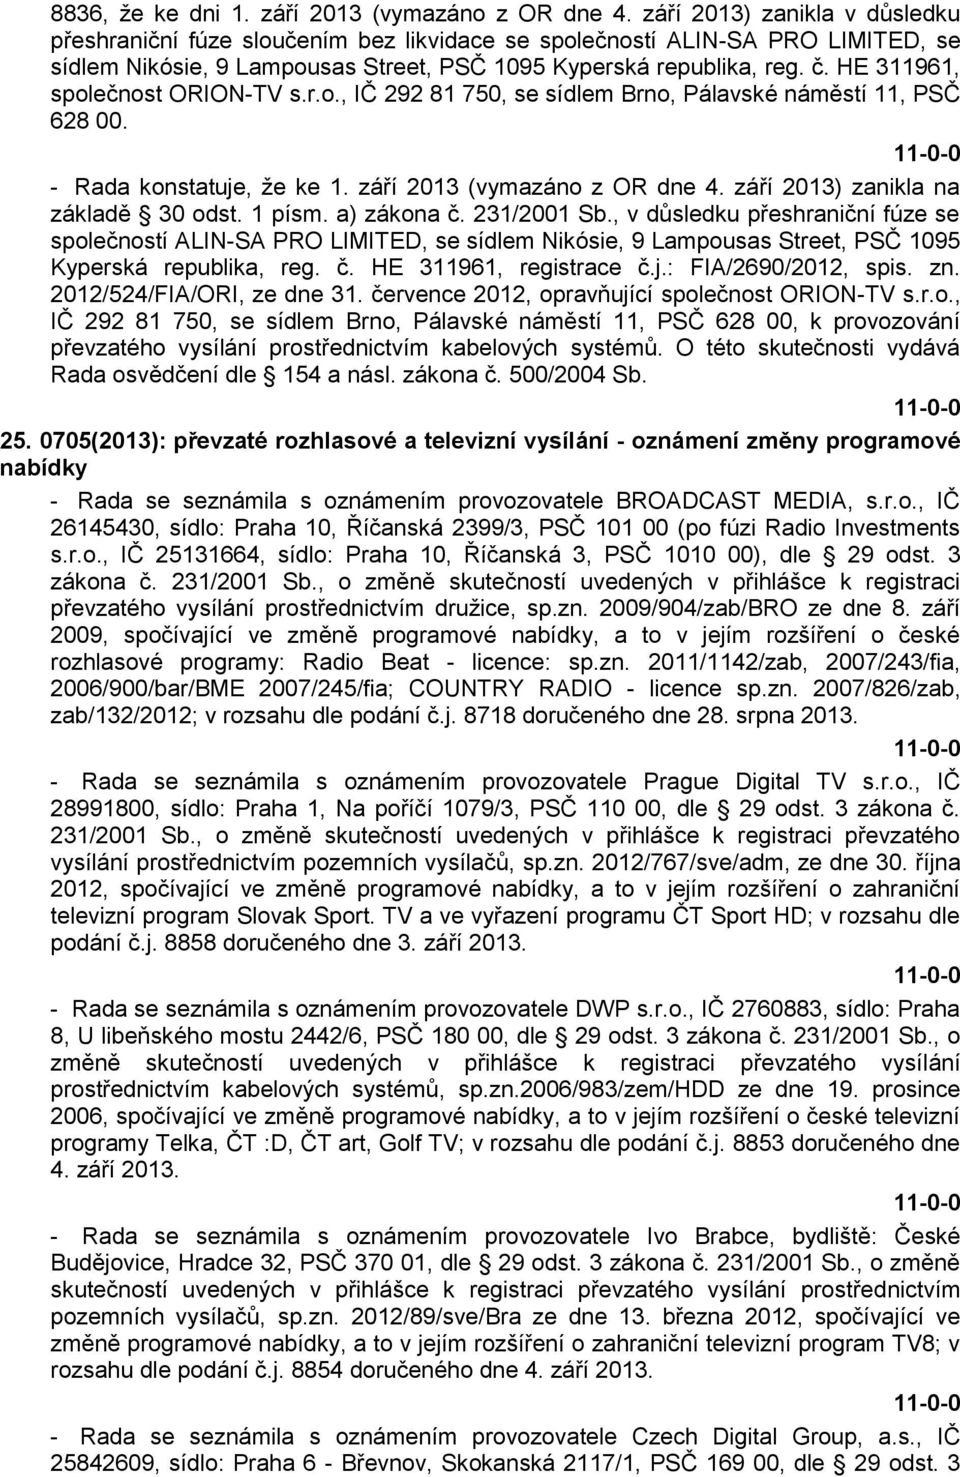 HE 311961, společnost ORION-TV s.r.o., IČ 292 81 750, se sídlem Brno, Pálavské náměstí 11, PSČ 628 00. - Rada konstatuje, že ke 1. září 2013 (vymazáno z OR dne 4.